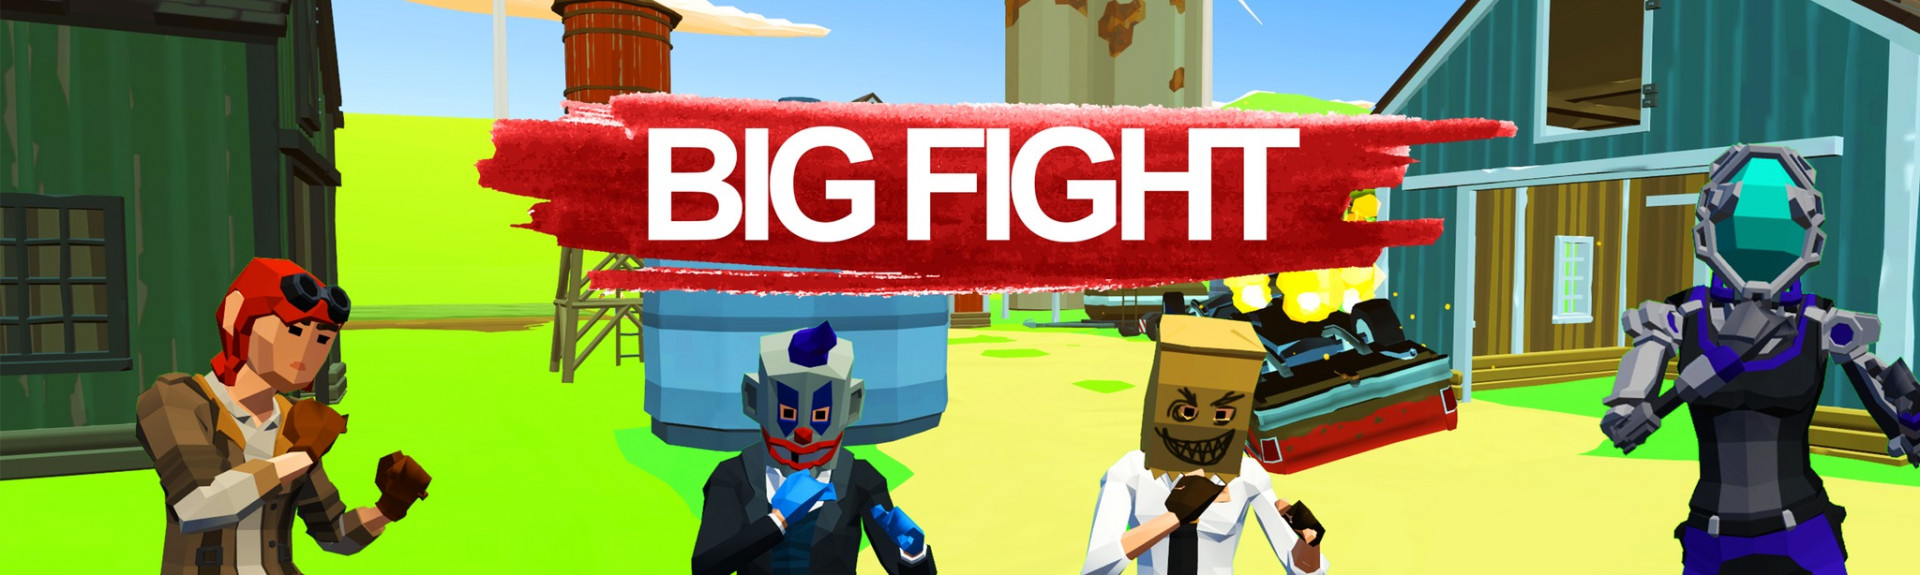 Big Fight